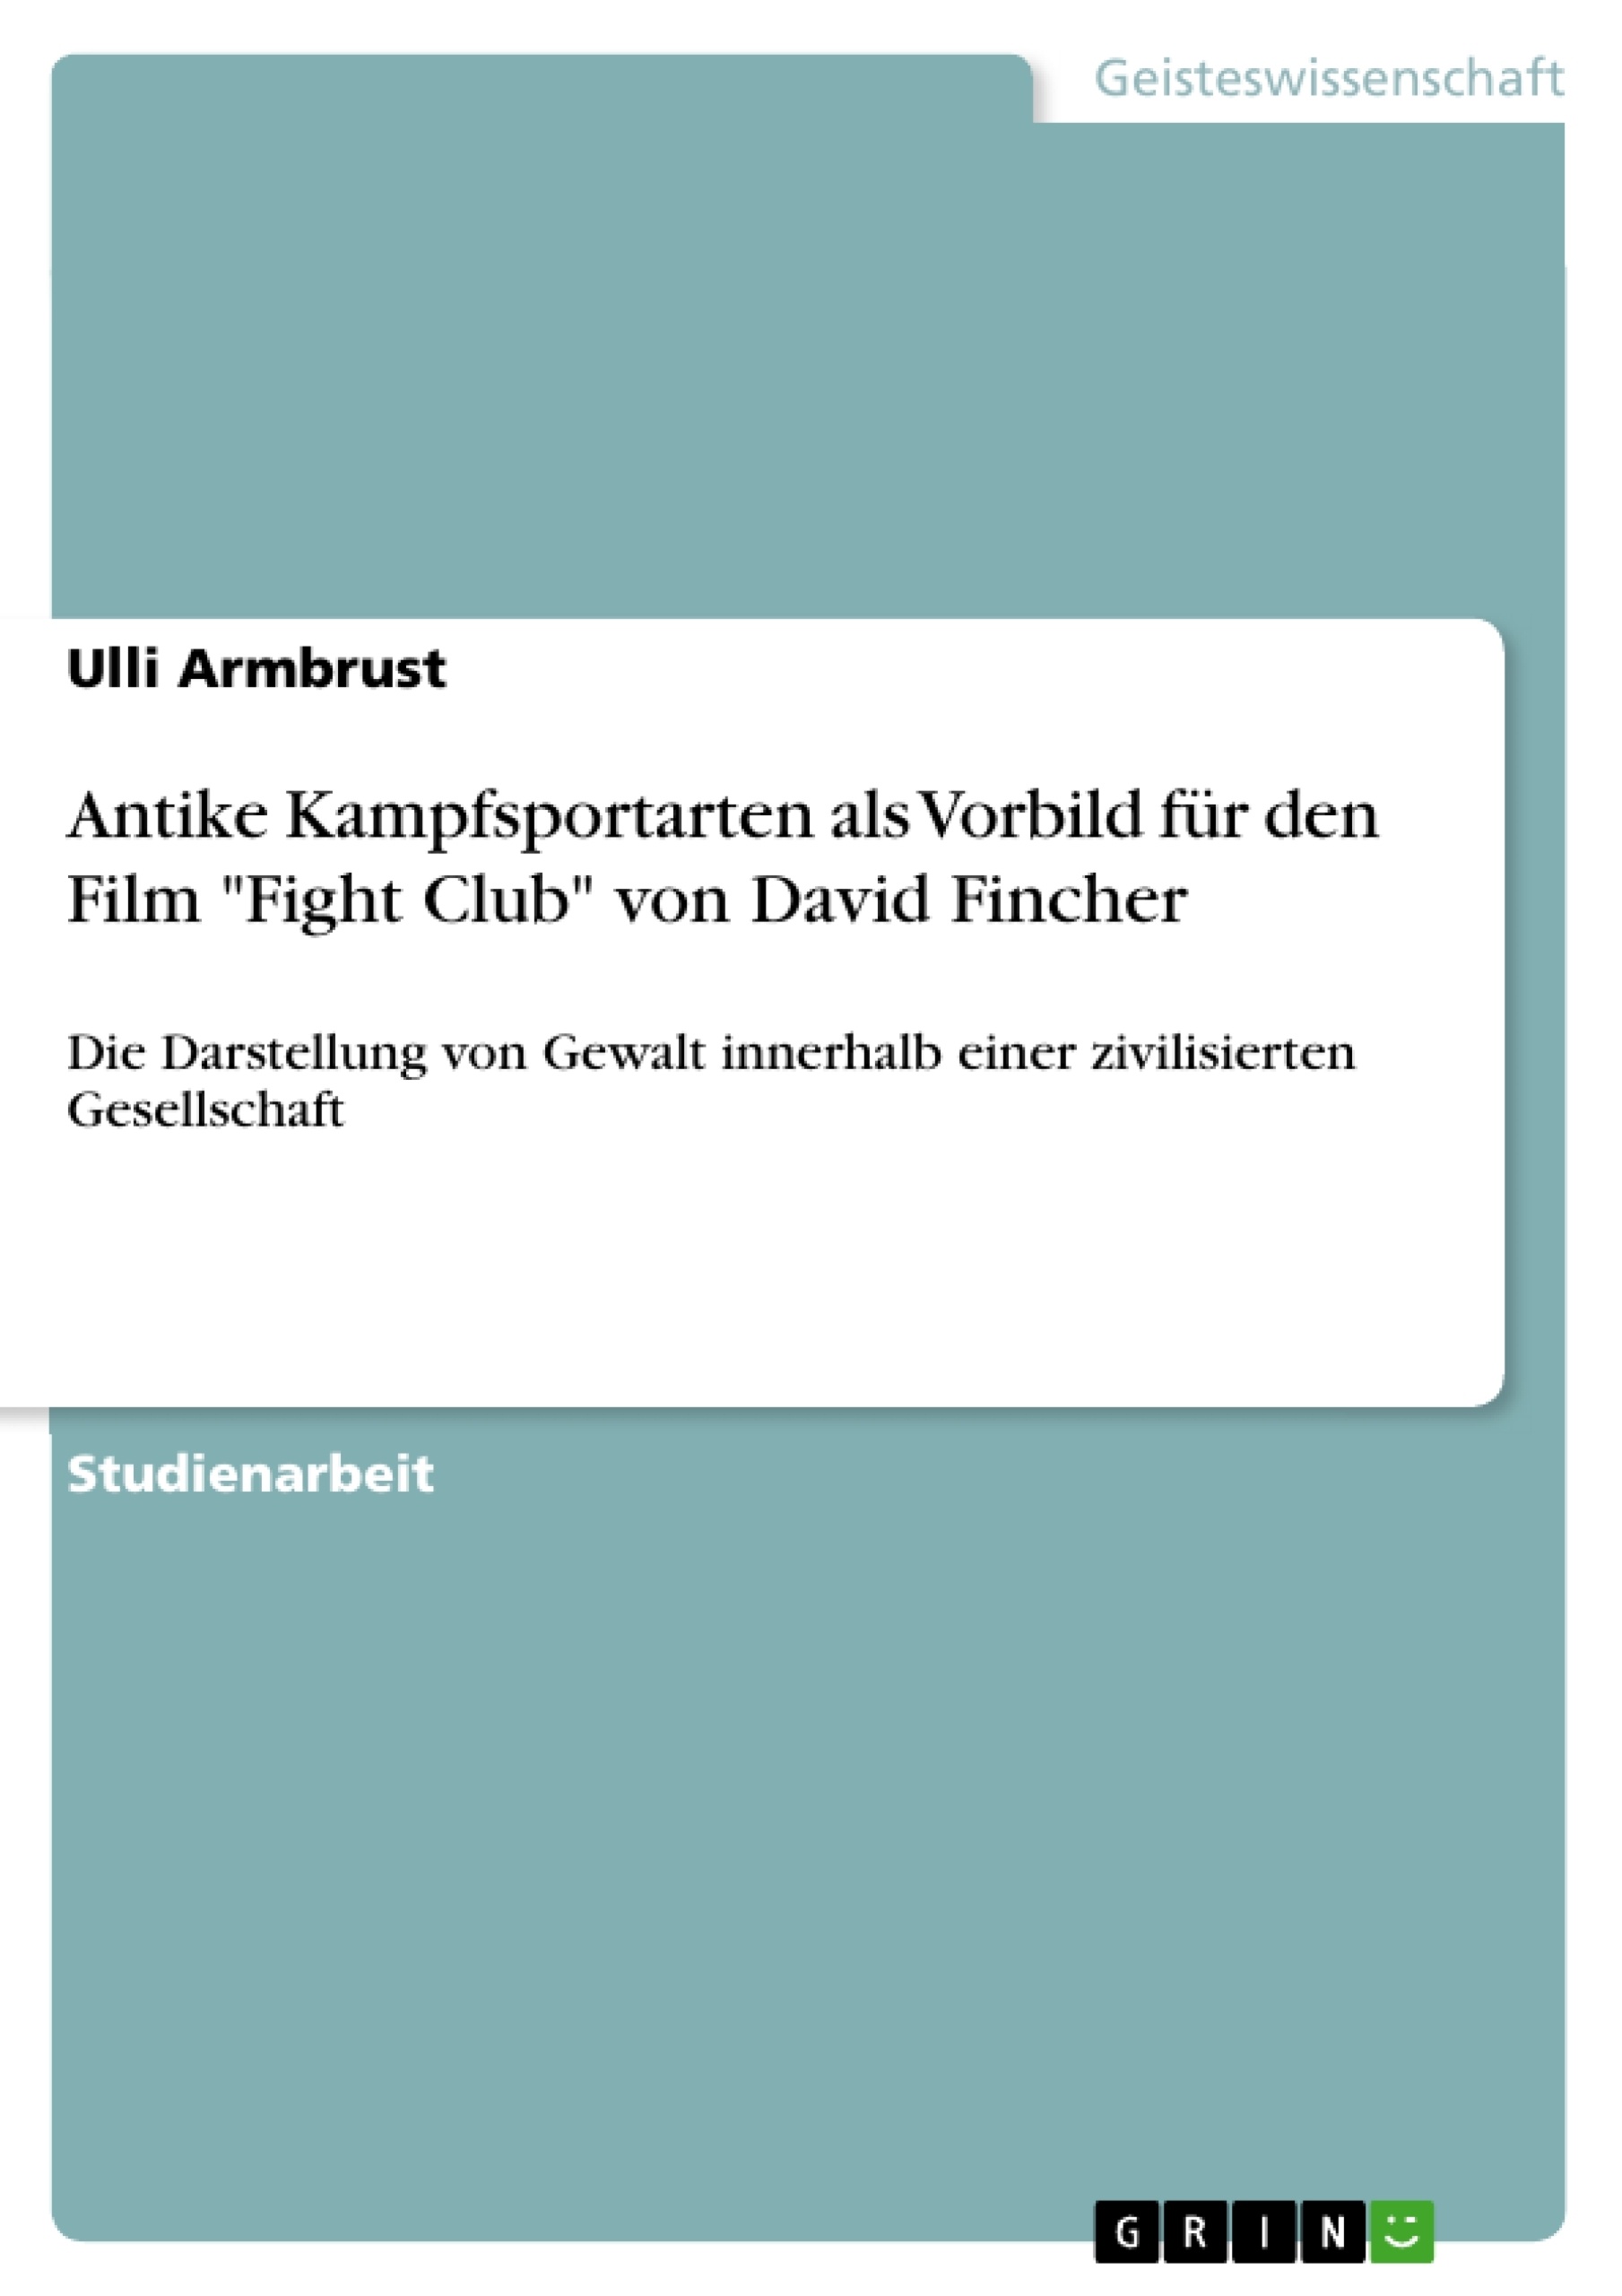 Titel: Antike Kampfsportarten als Vorbild für den Film "Fight Club" von David Fincher